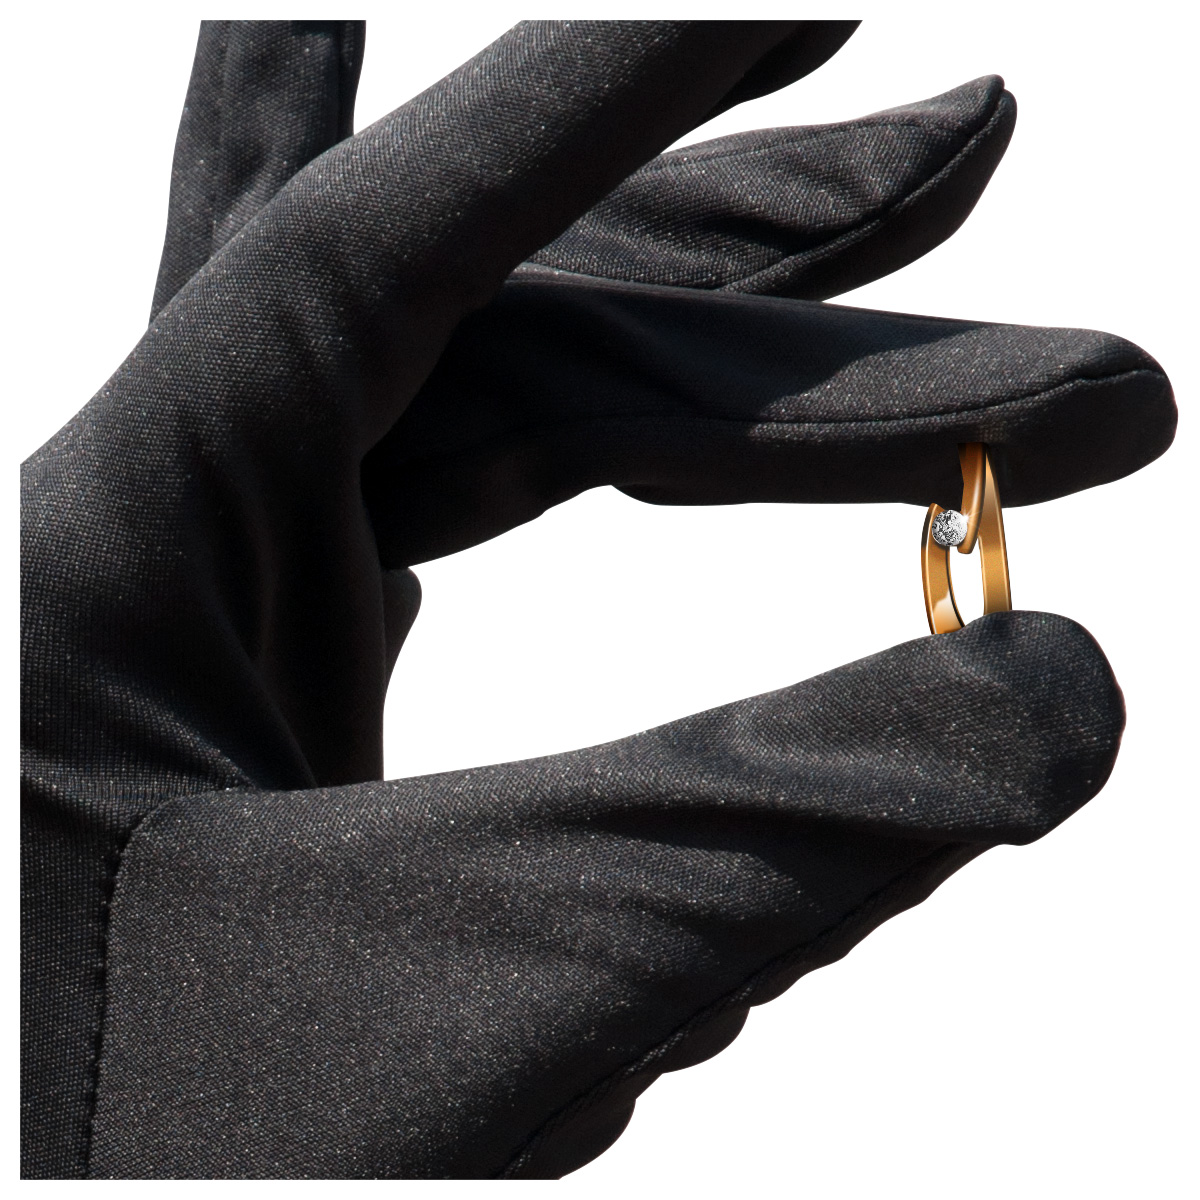 Mikrofaser Handschuh-Paar Haute Couture, schwarz, Größe M